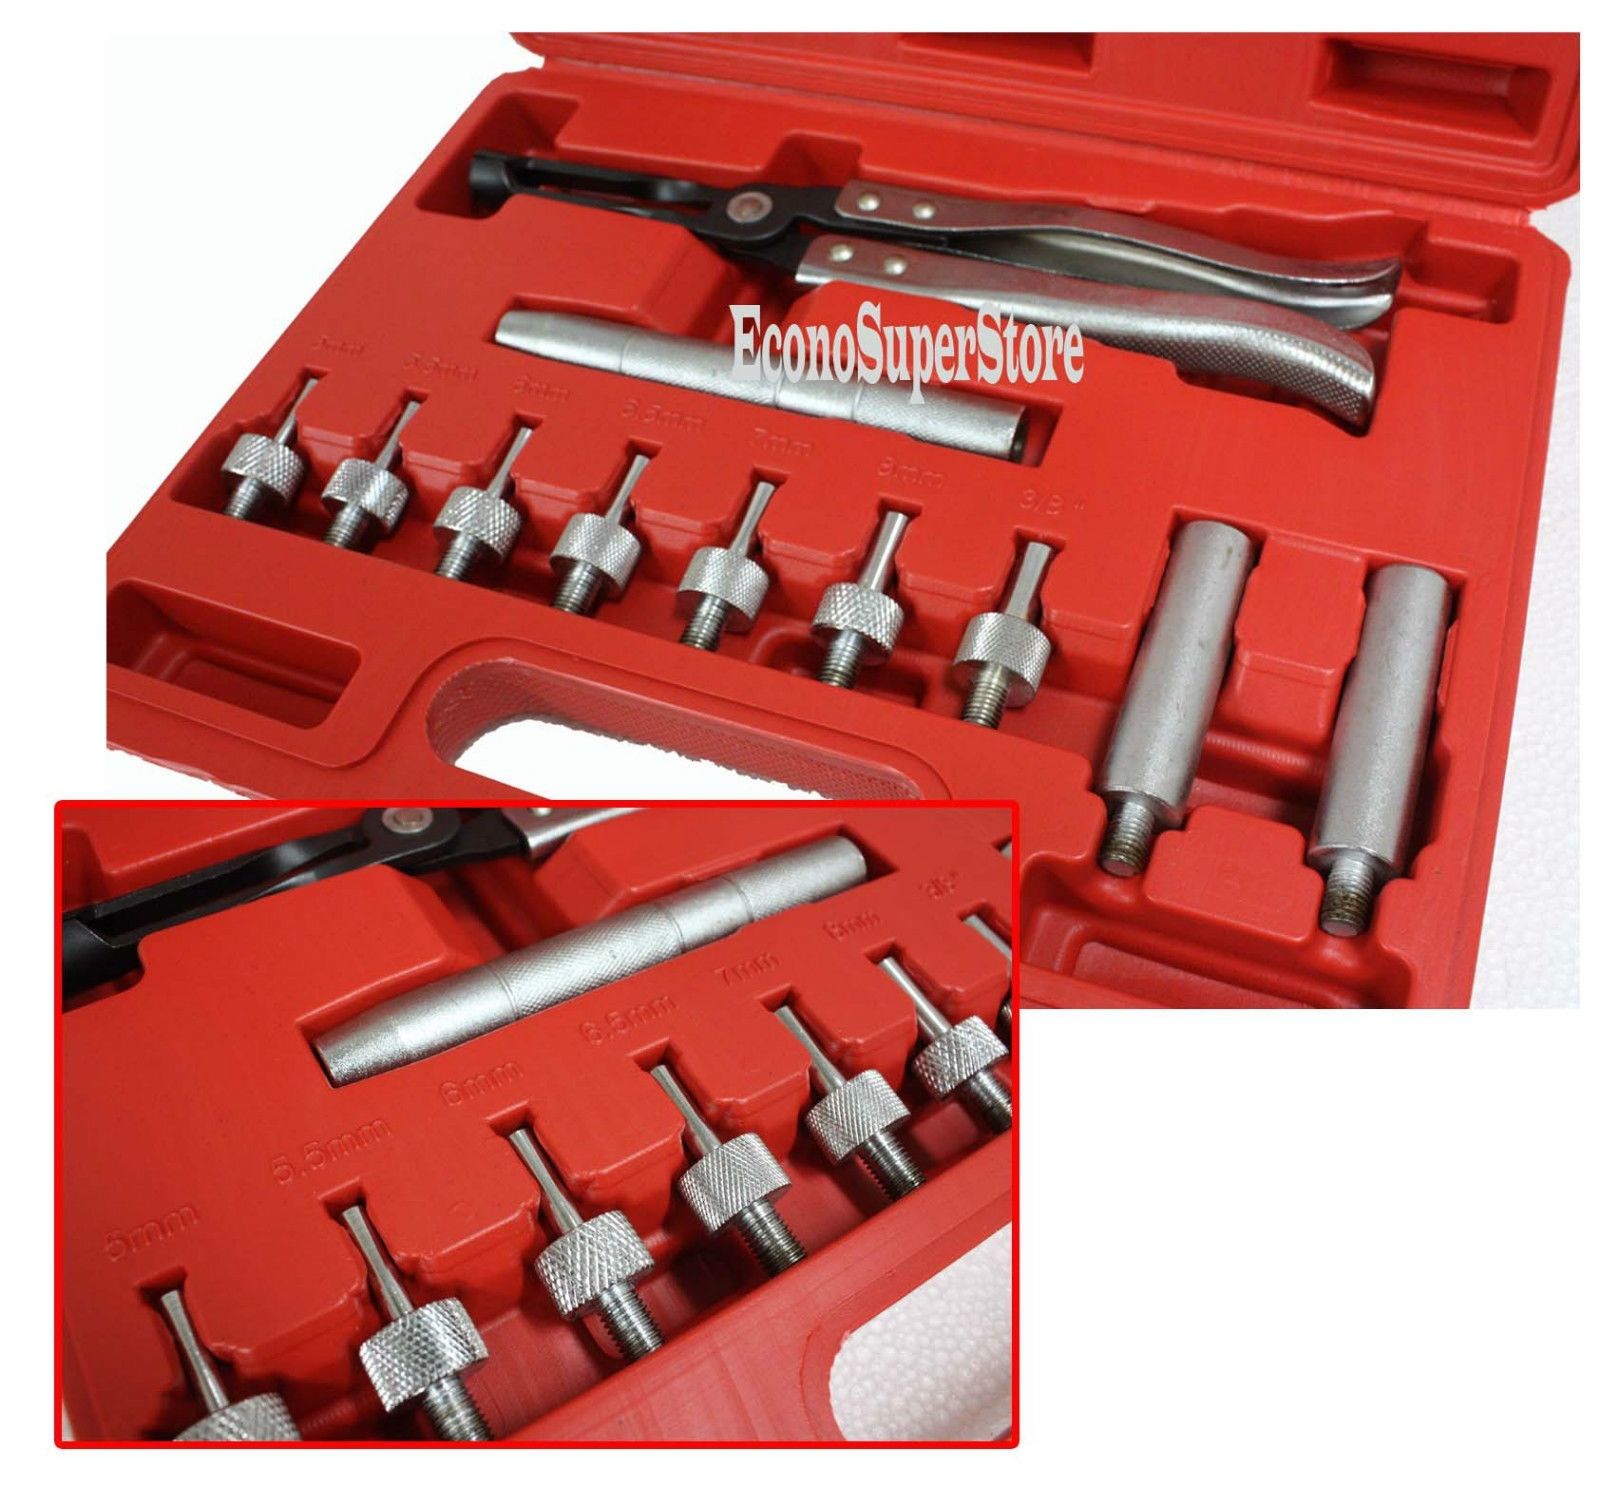 Valve Stem Seal Tool Installer, Katsu 449858 - SAKR Building Materials